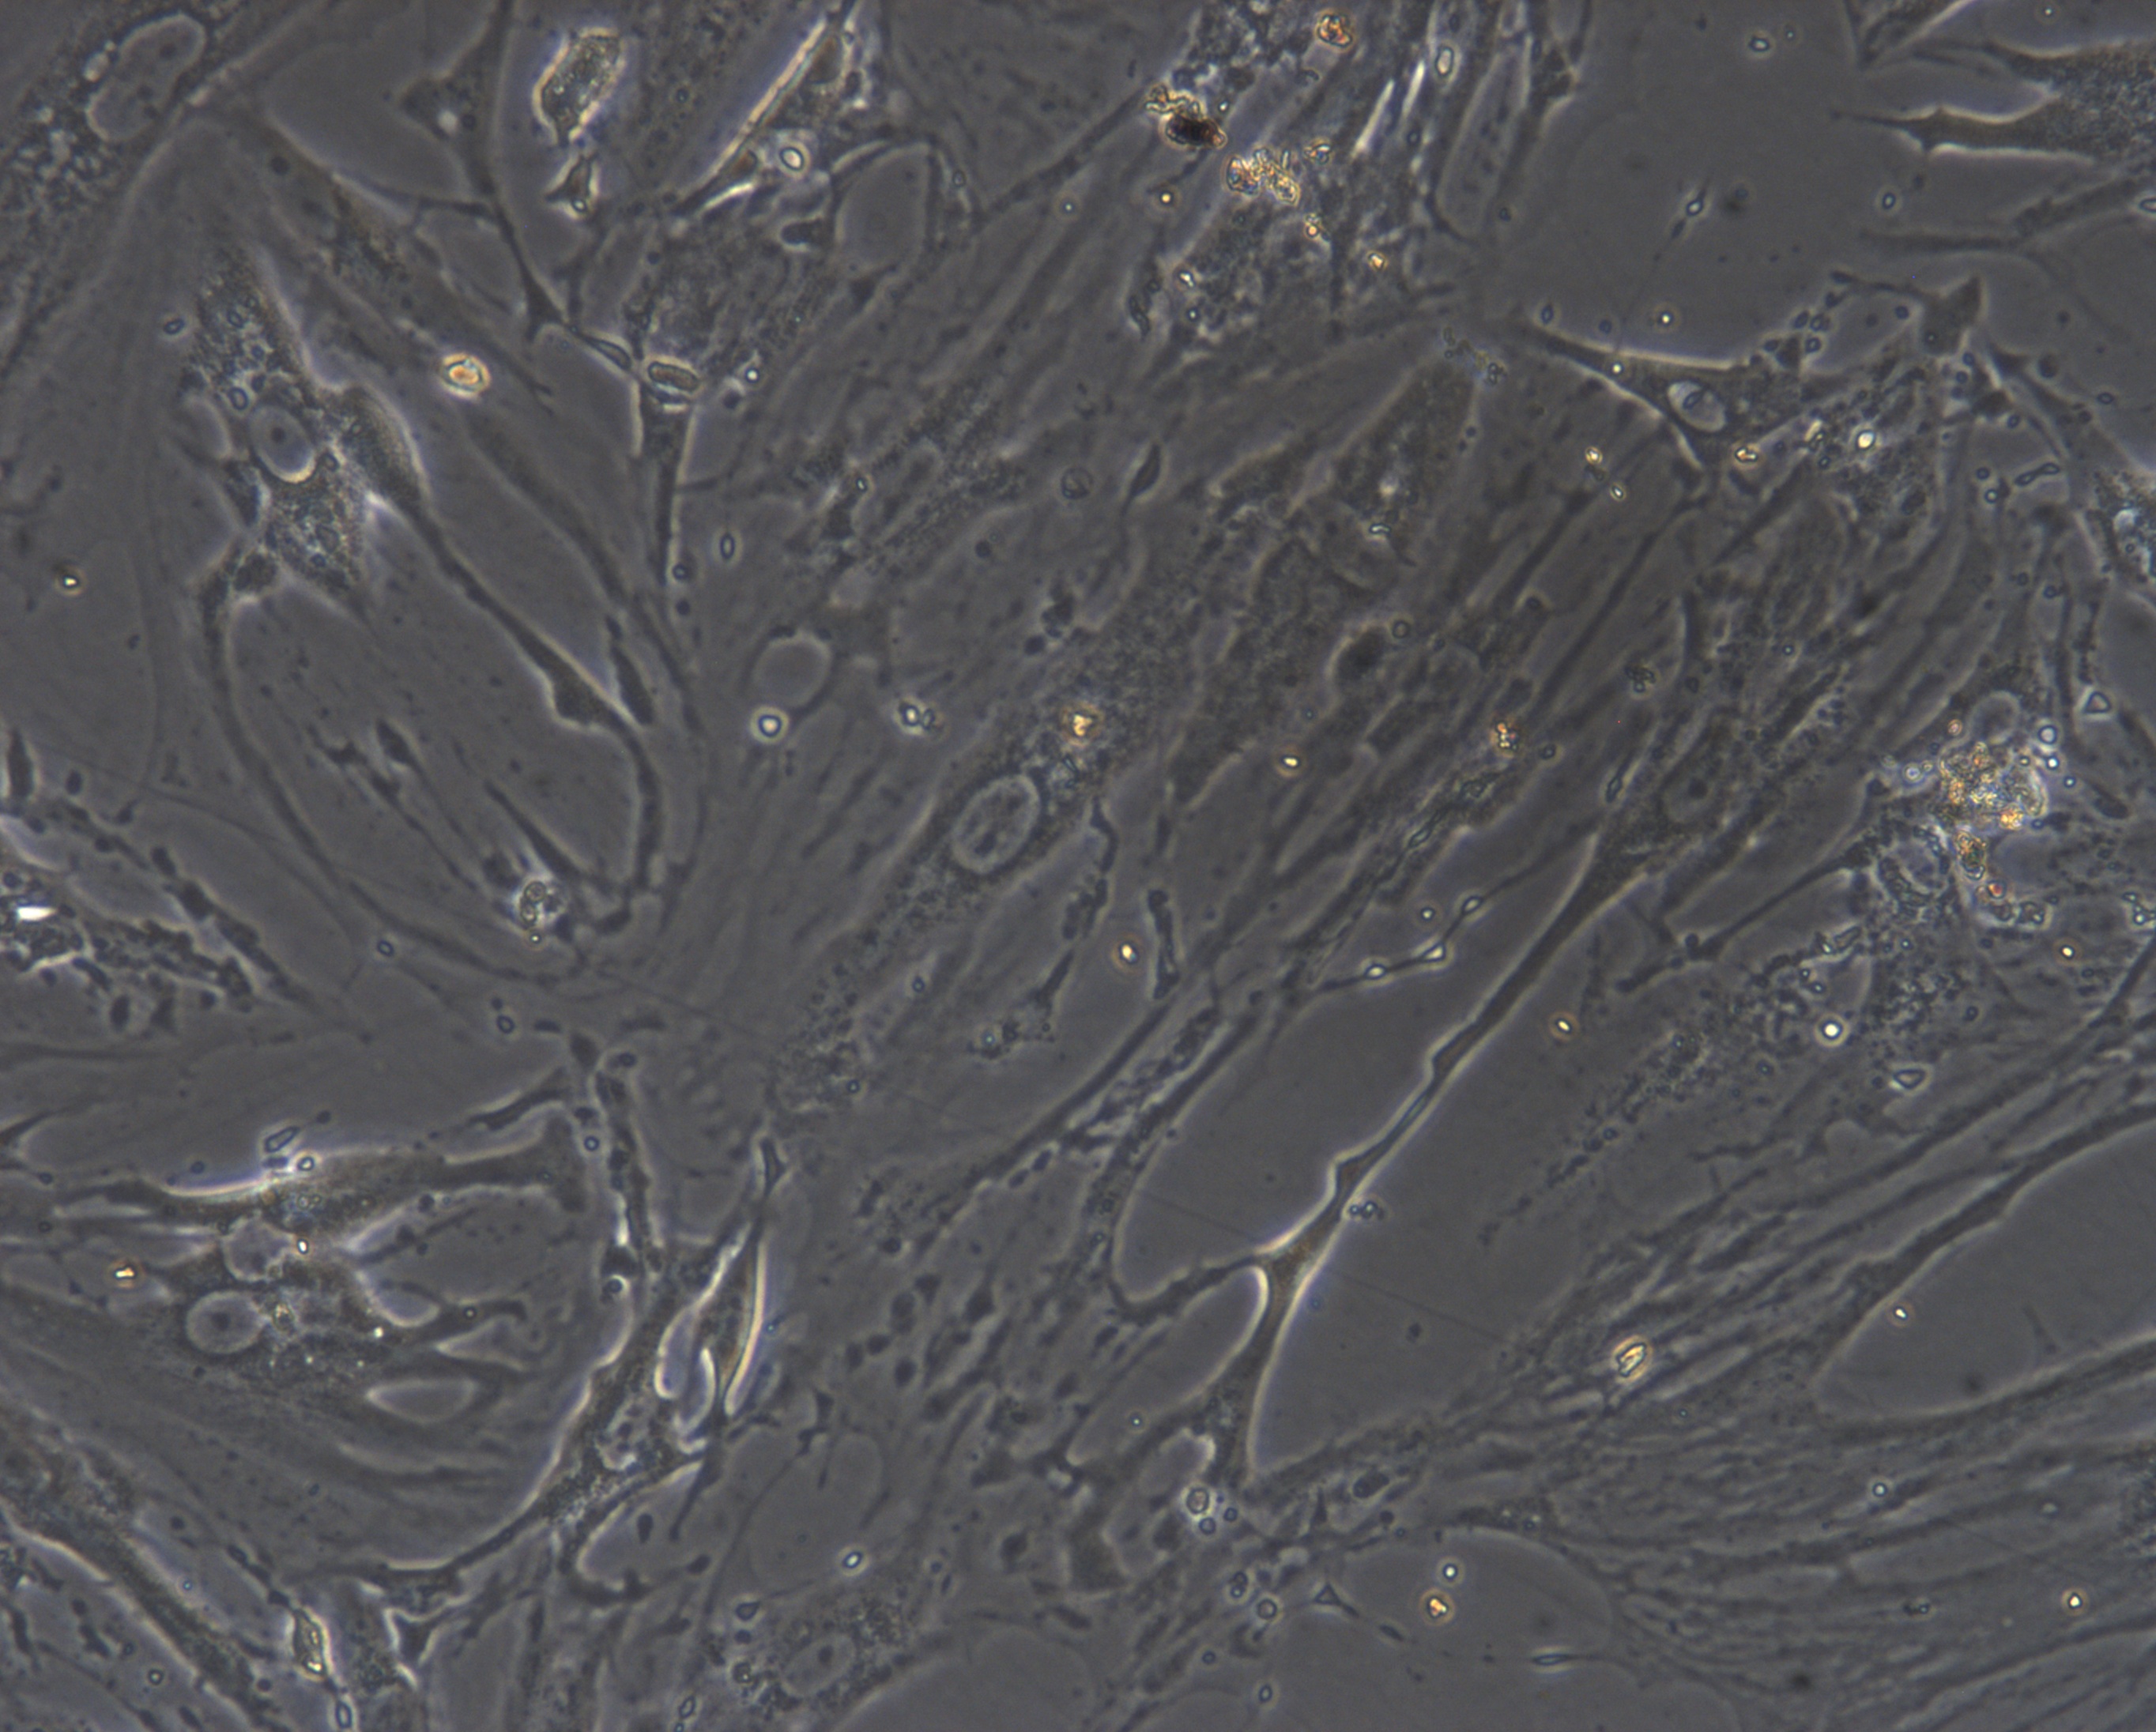 兔视网膜色素上皮细胞(RPEC)原代细胞